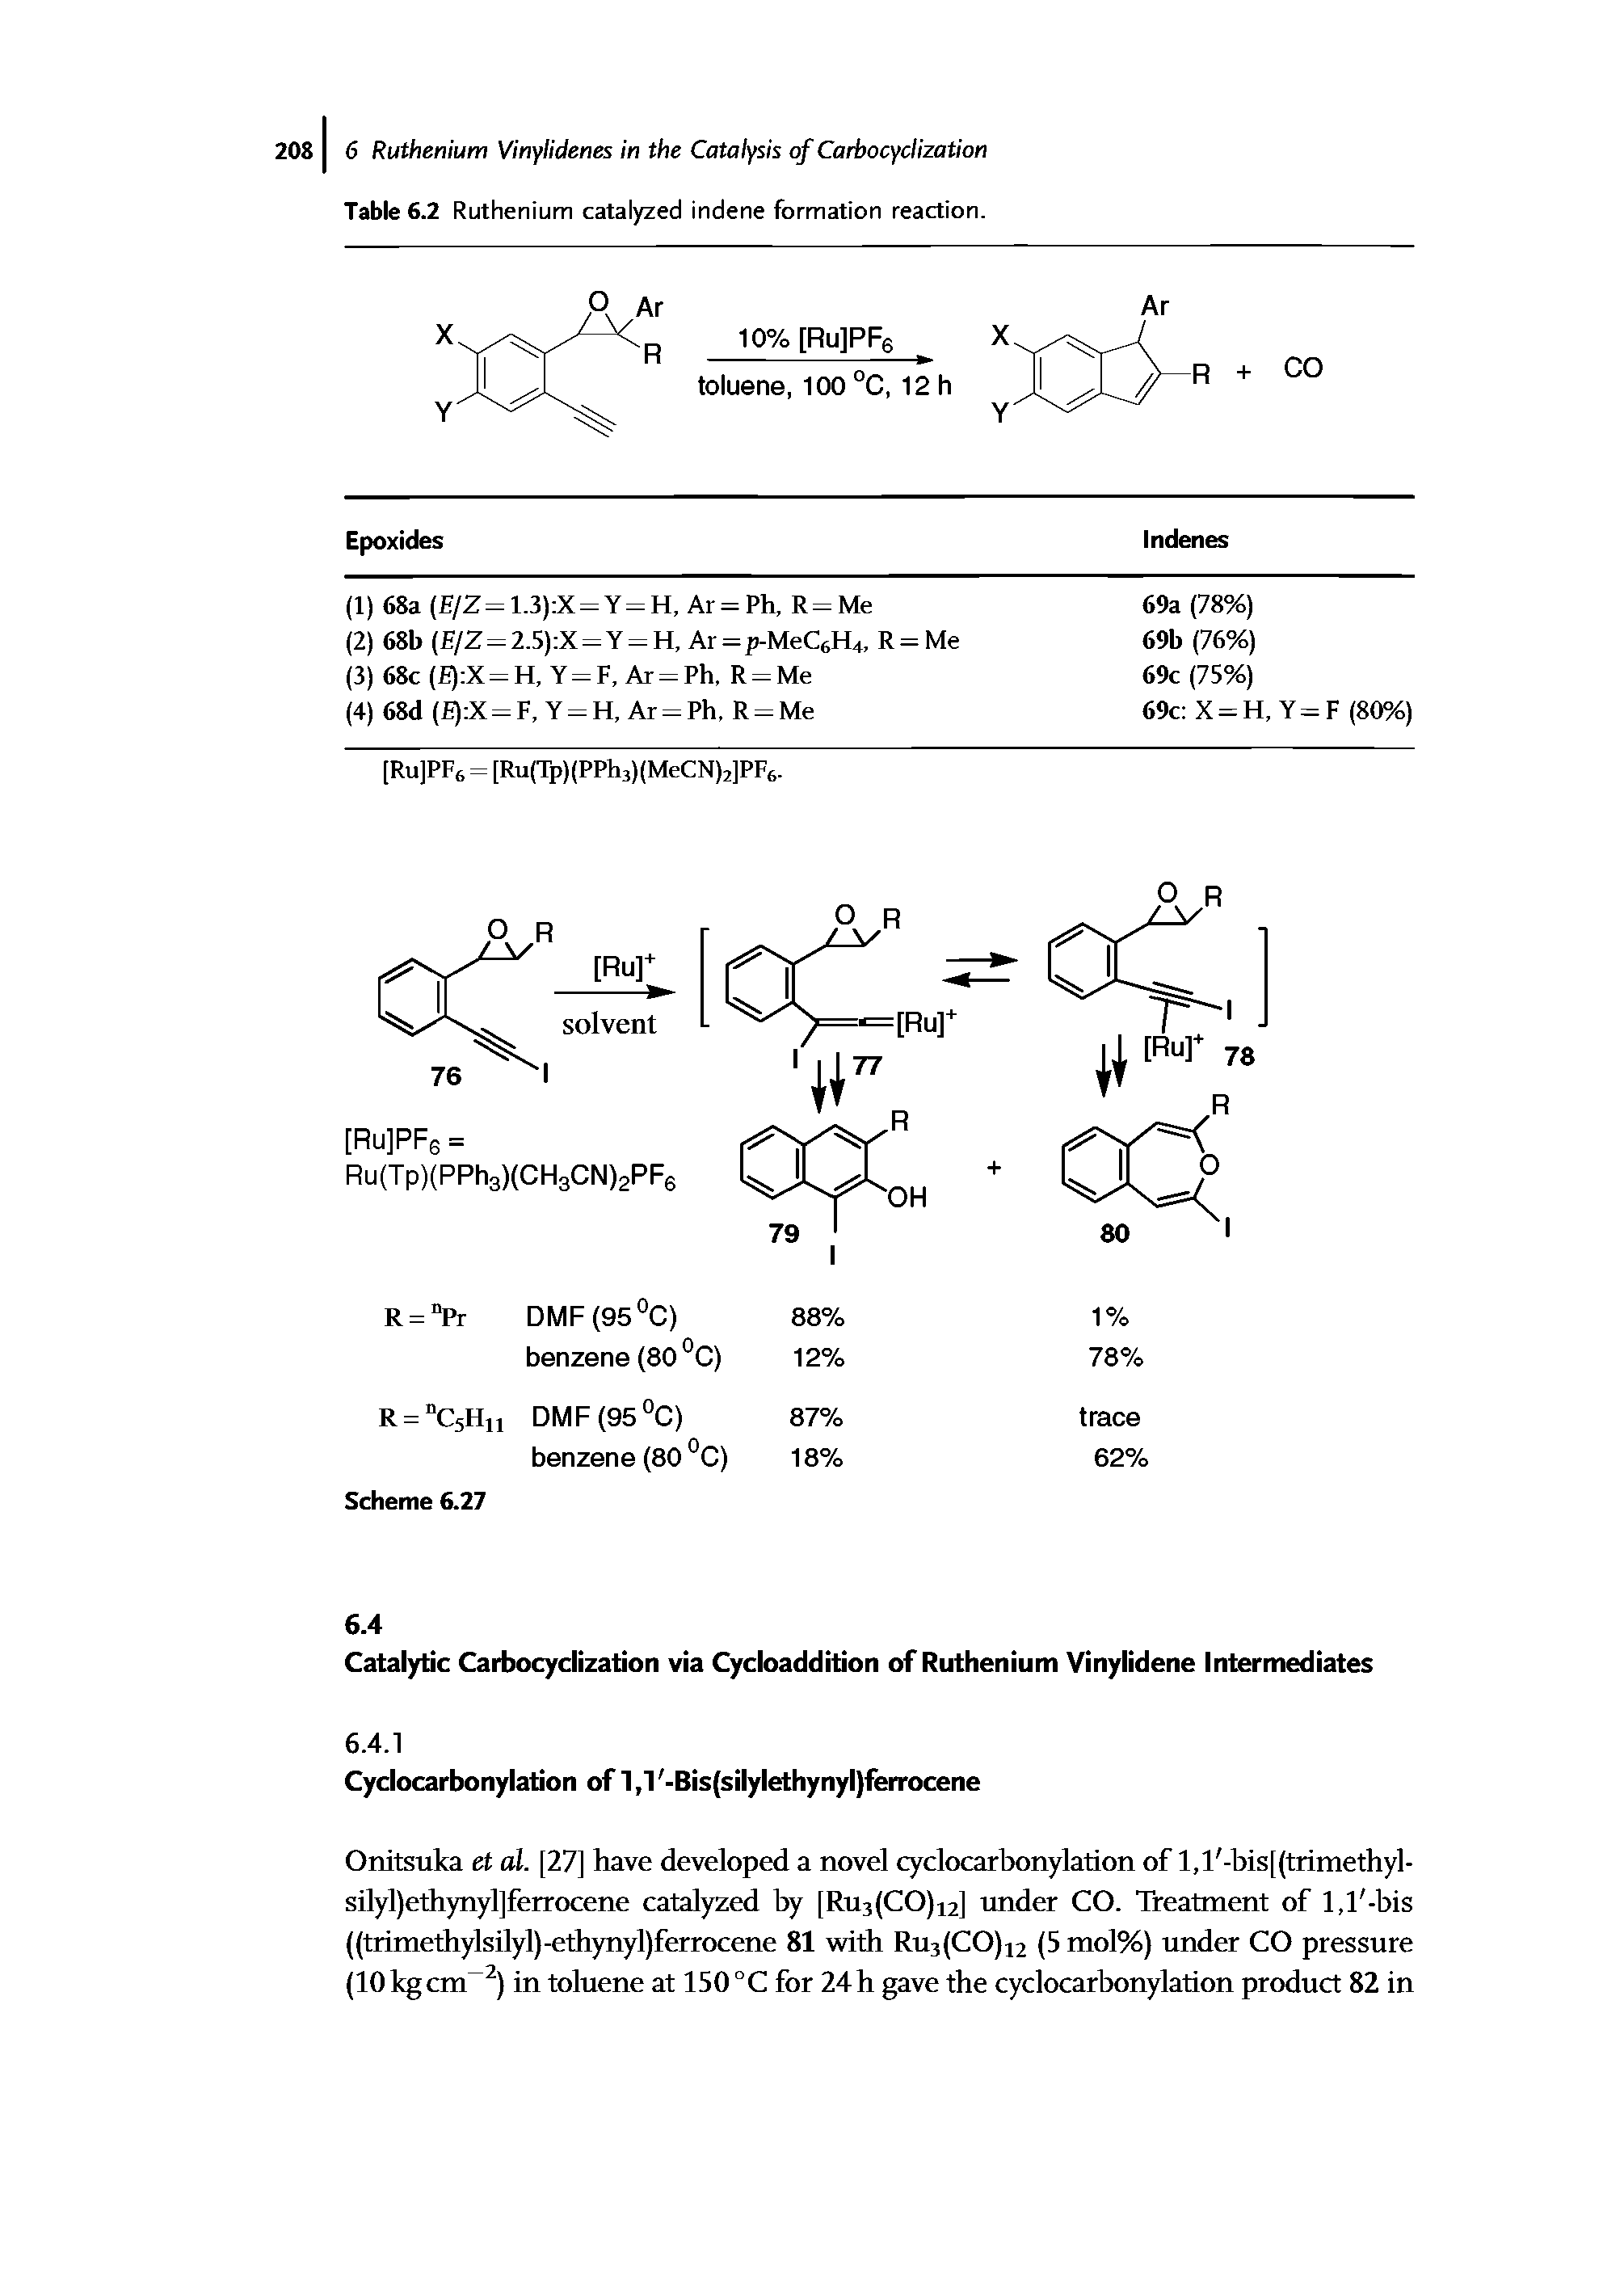 Table 6.2 Ruthenium catalyzed indene formation reaction. ...